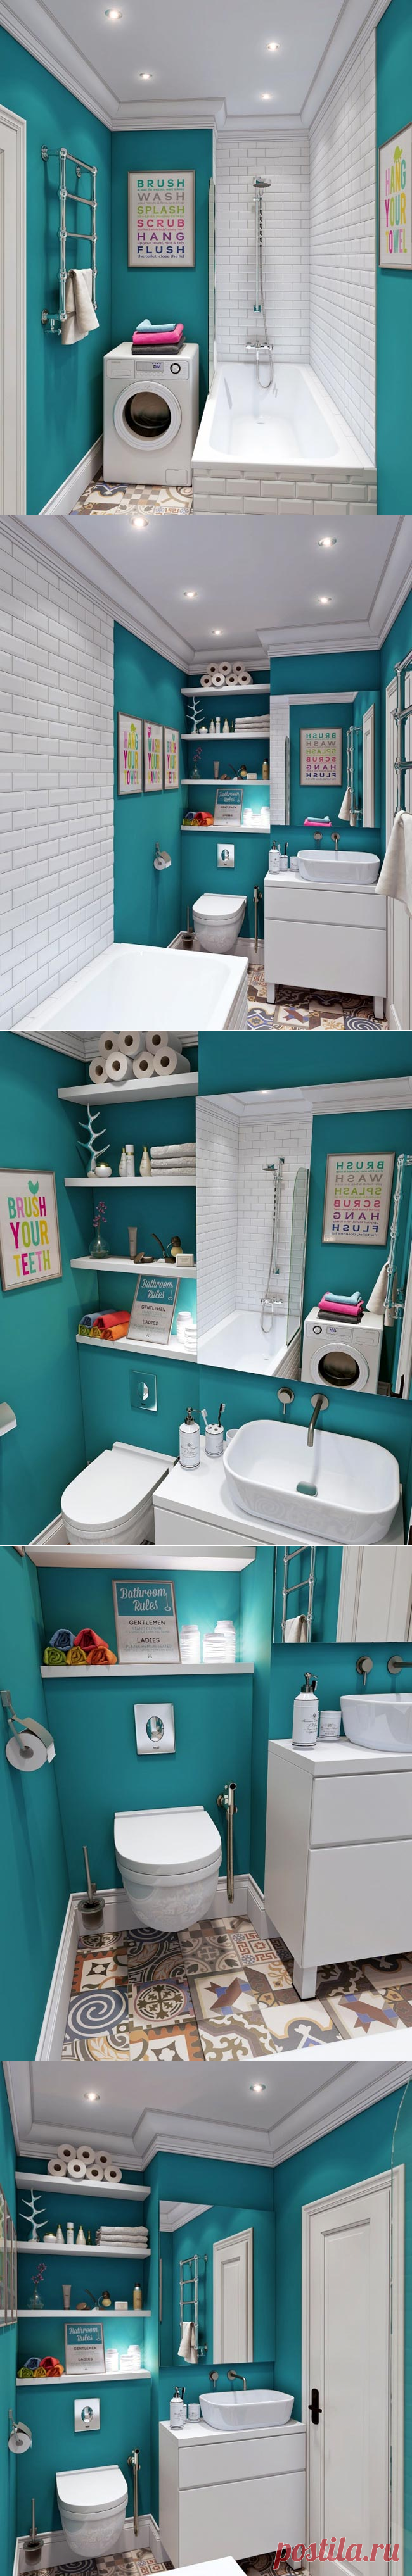 Бирюзовая ванная комната | Фотографии красивых интерьеров